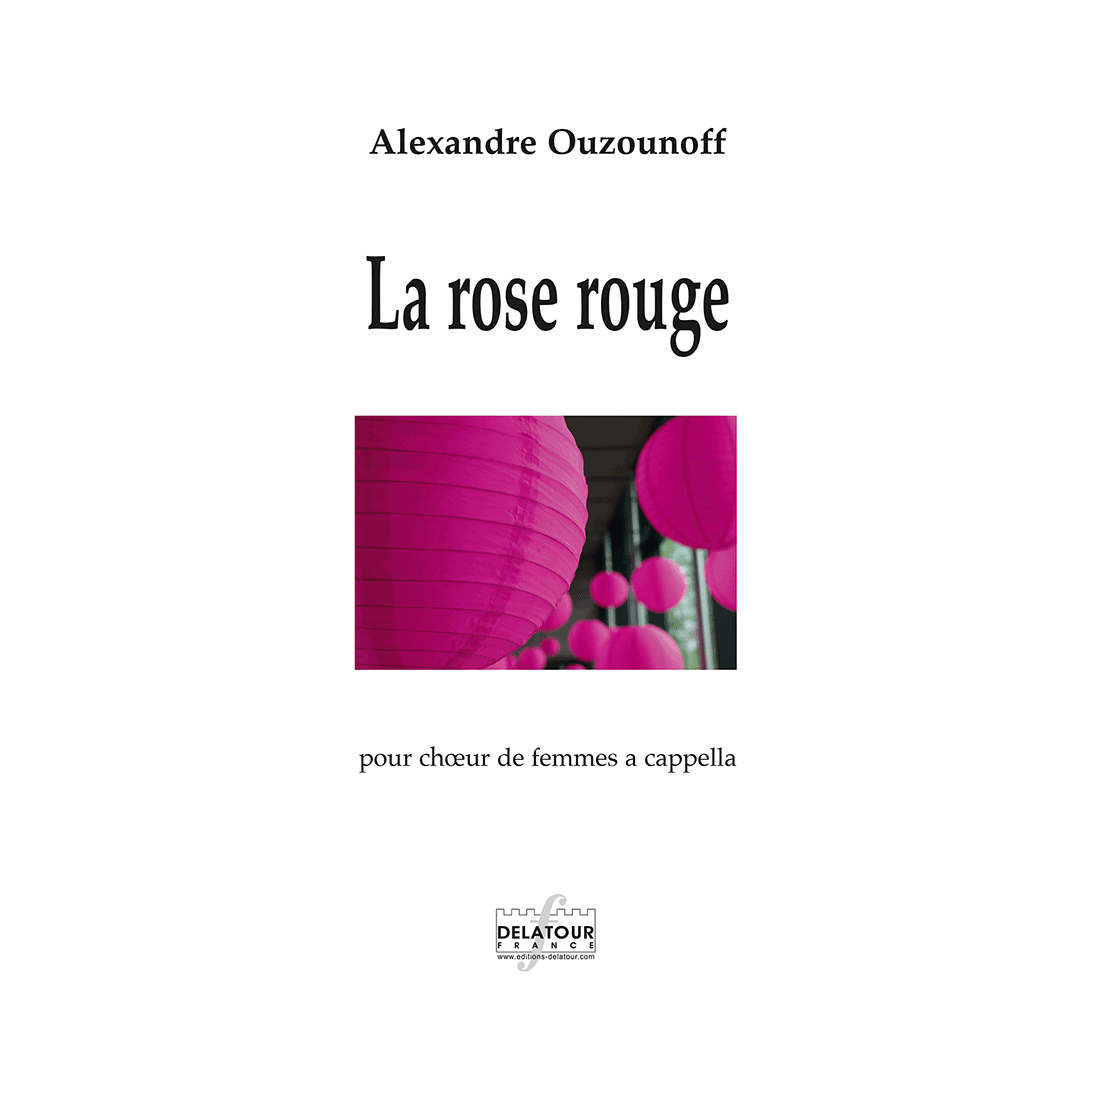 La rose rouge for women's choir a cappella